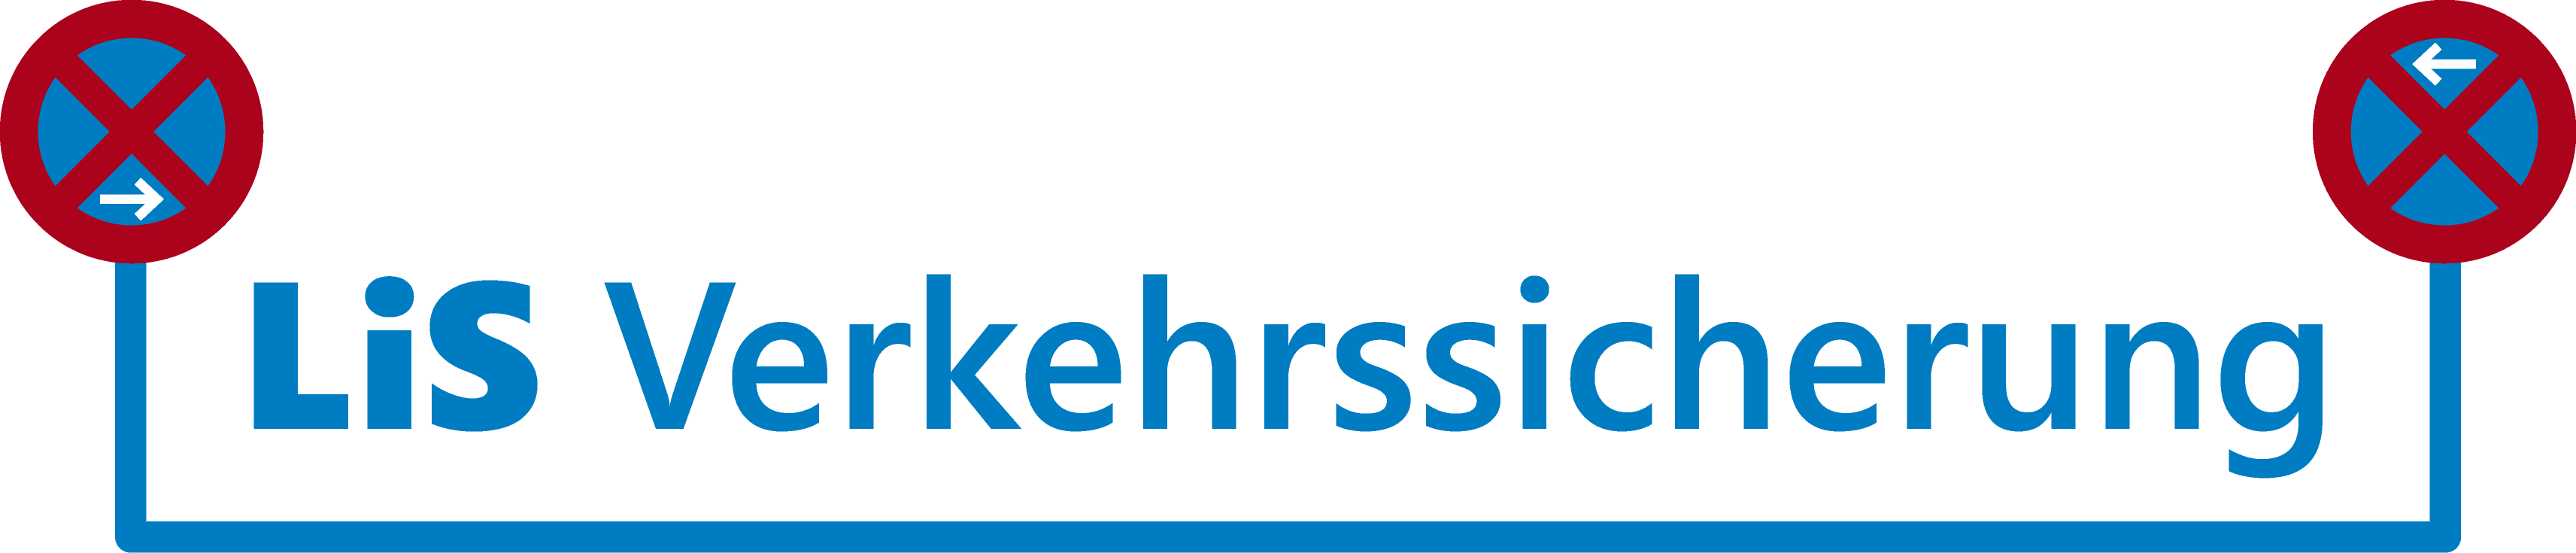 Logo-LiS-Verkehrssicherung-transparent